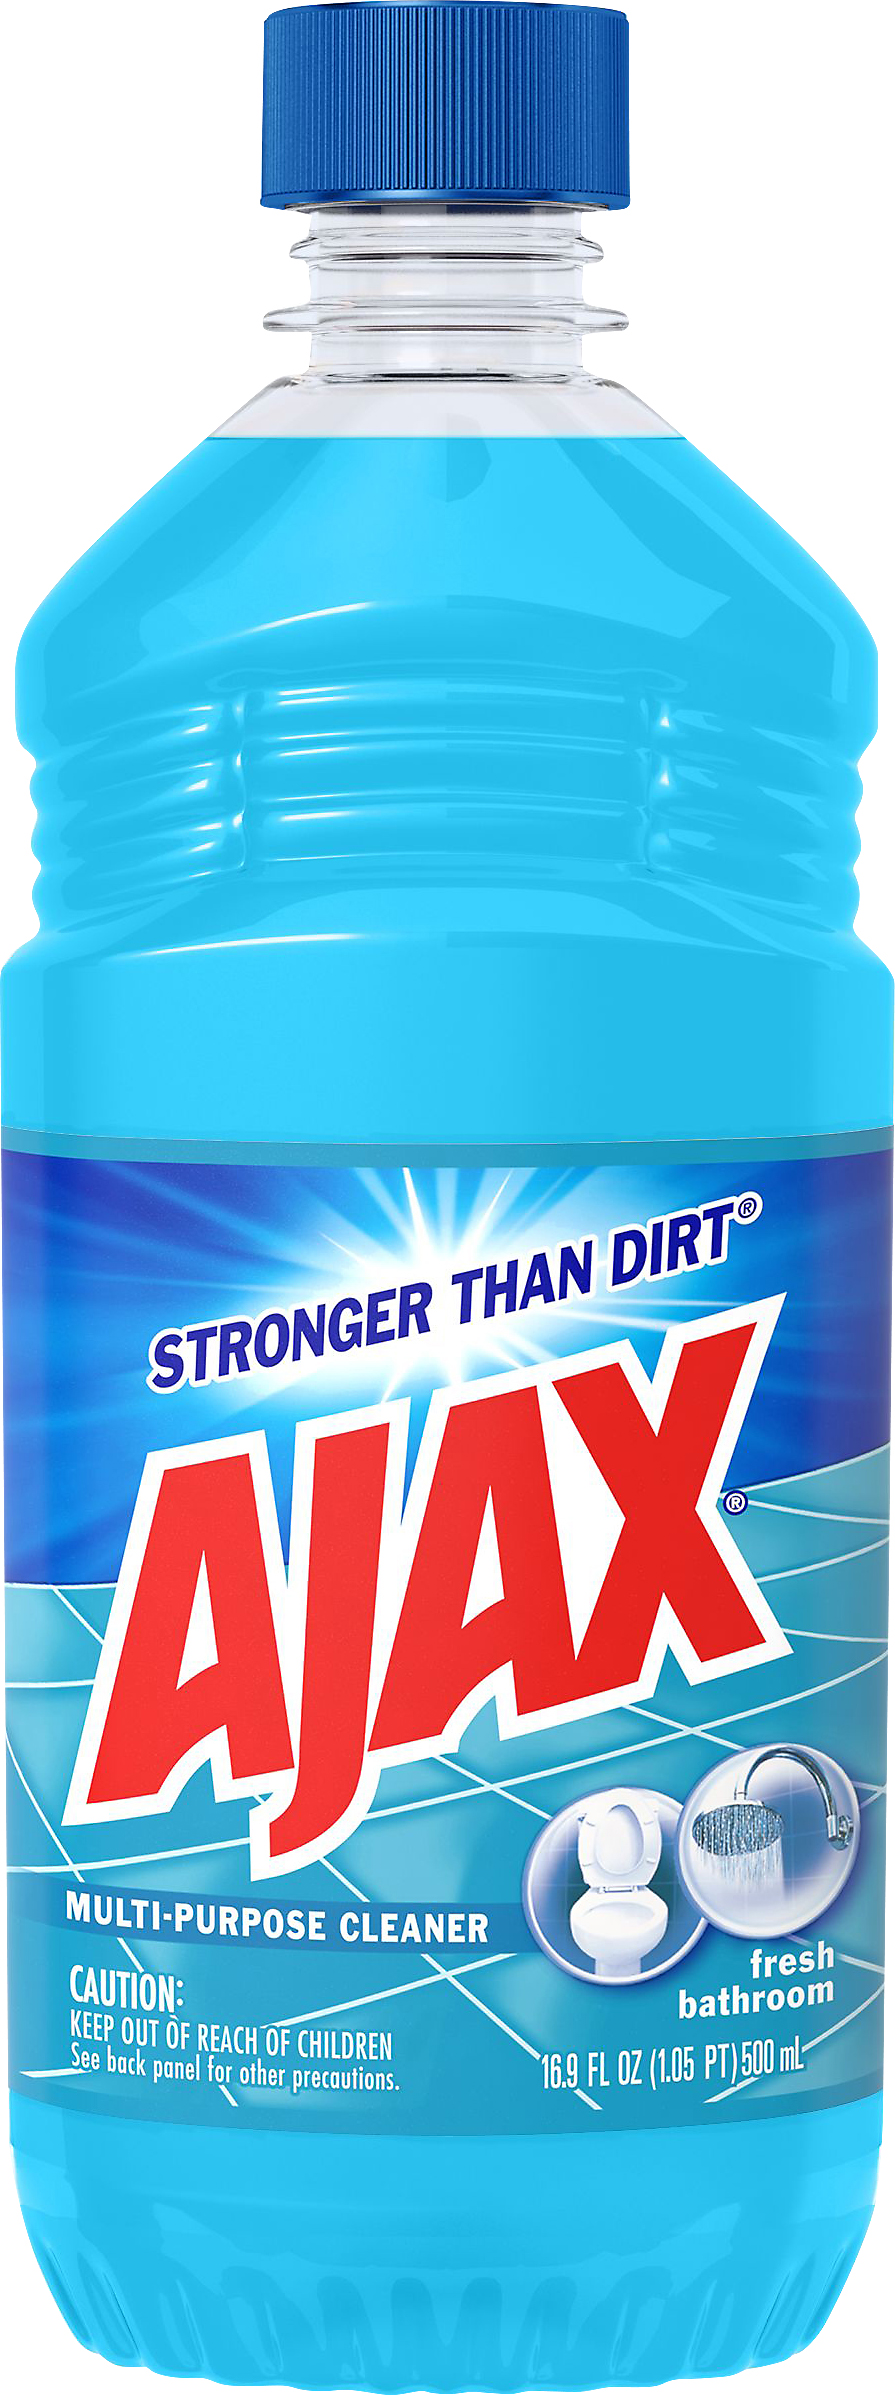 Ajax Fresh Bathroom Cleaner 16.9 oz